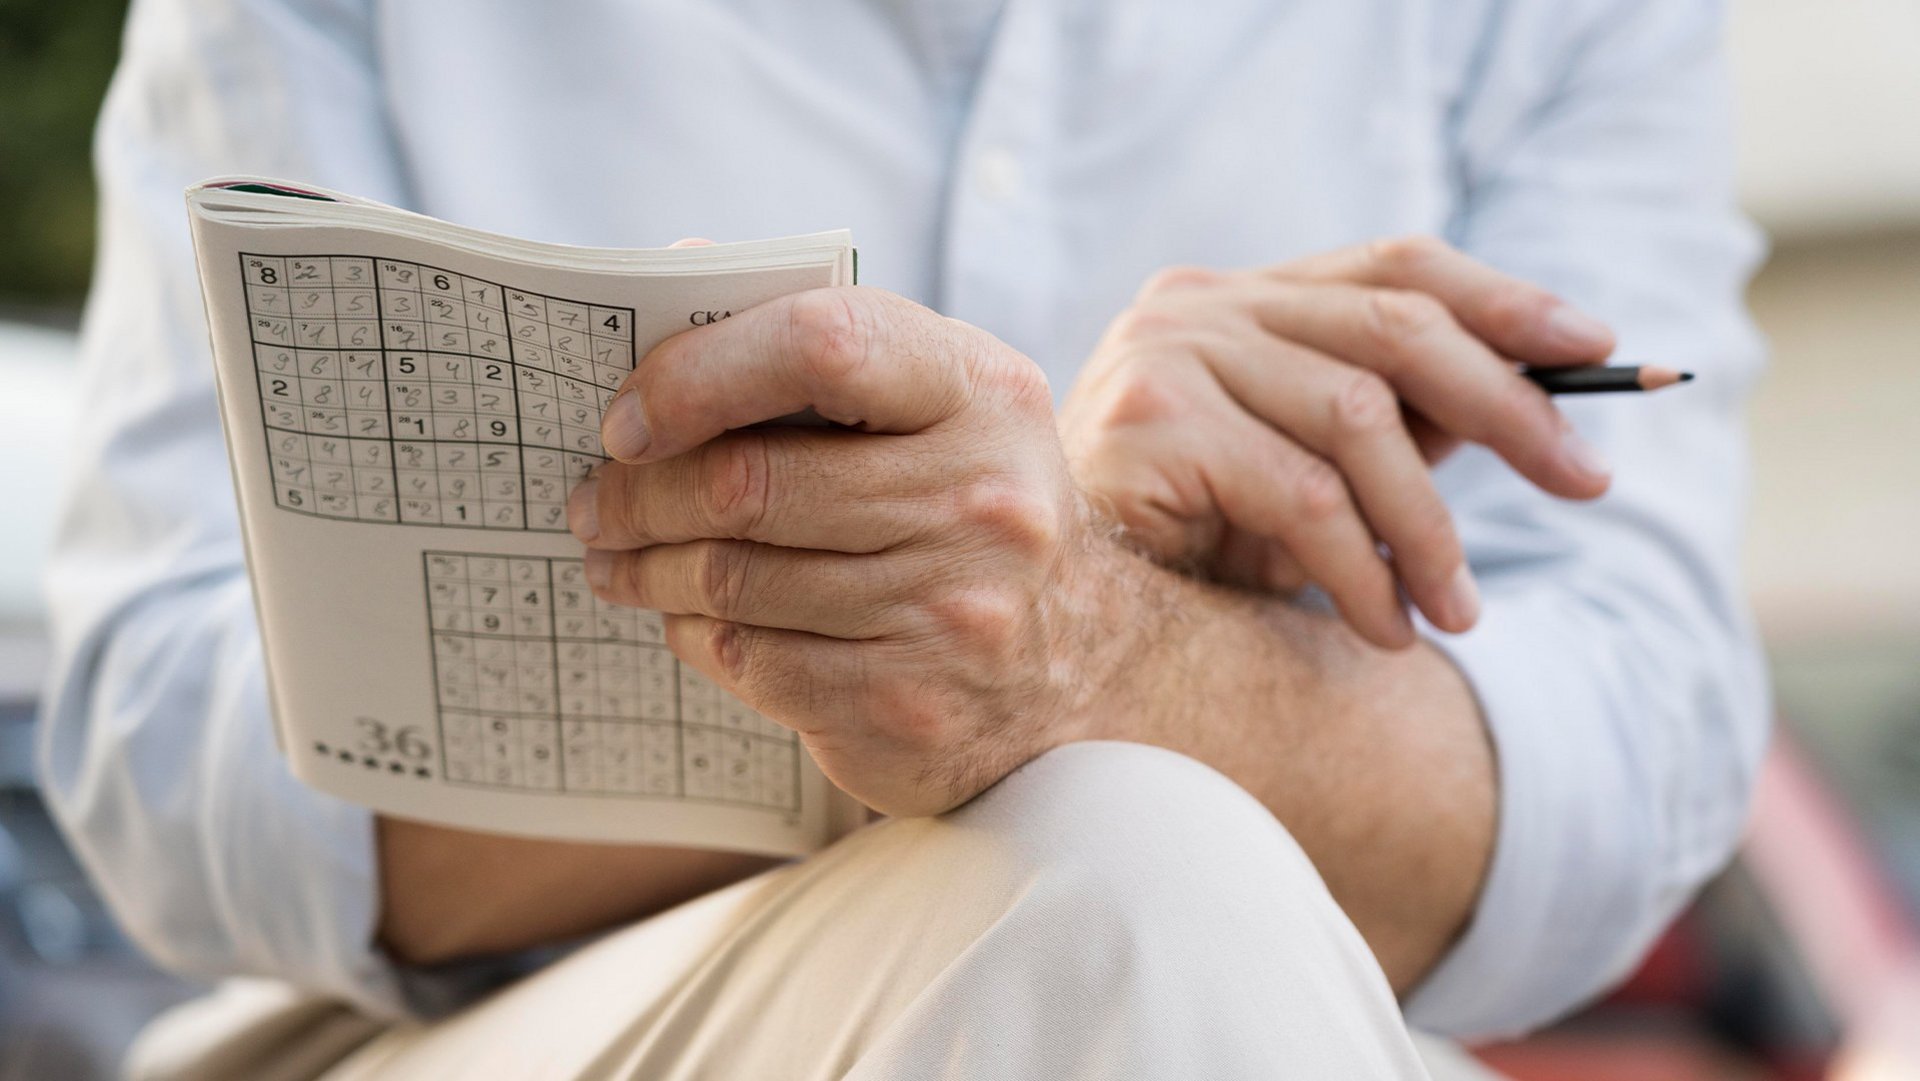 Das Bild zeigt eine Person, welche ein Sudoku Rätsel löst.